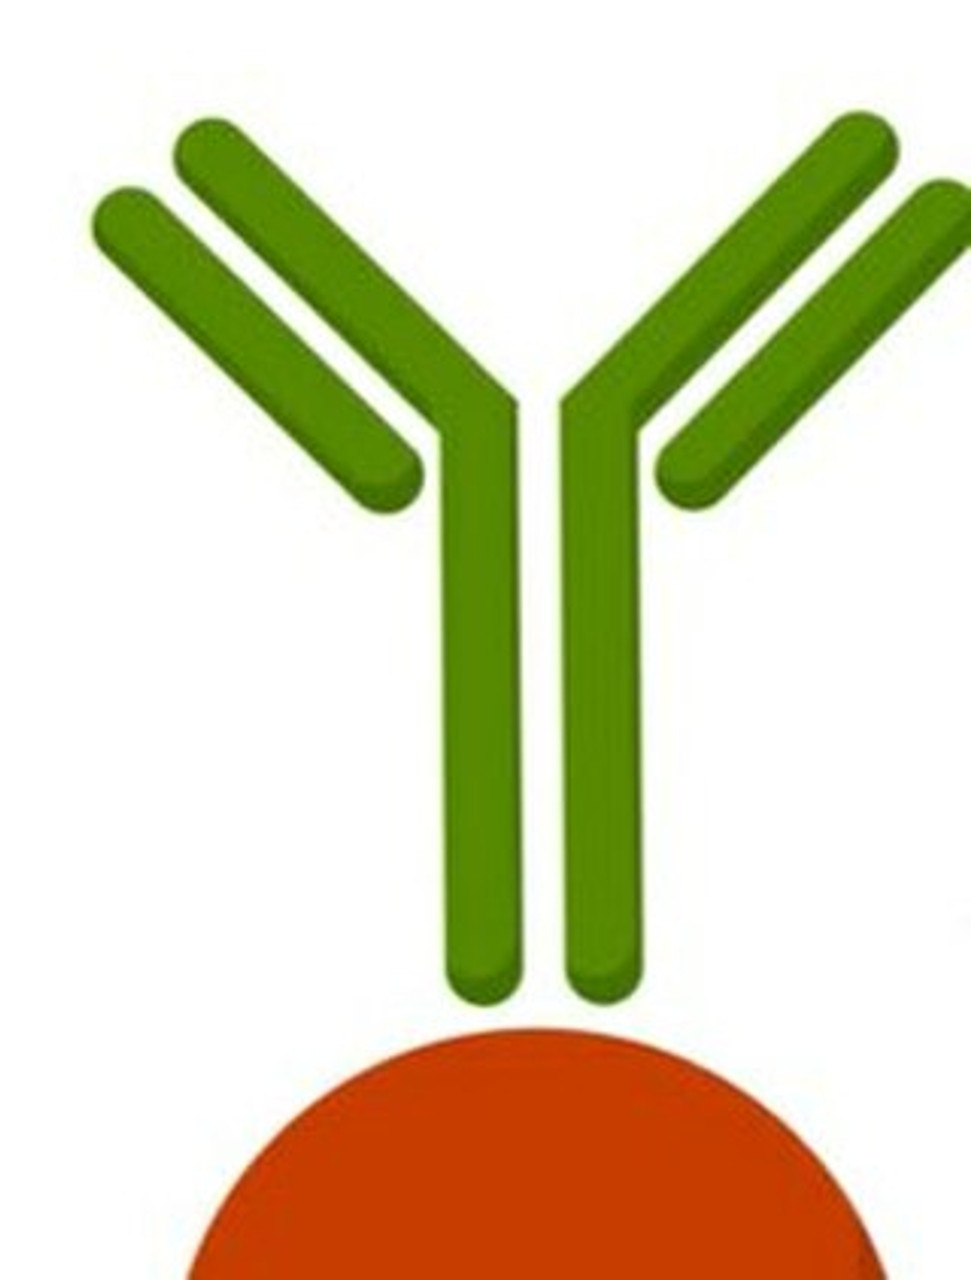 Anti-CDCA2 antibody